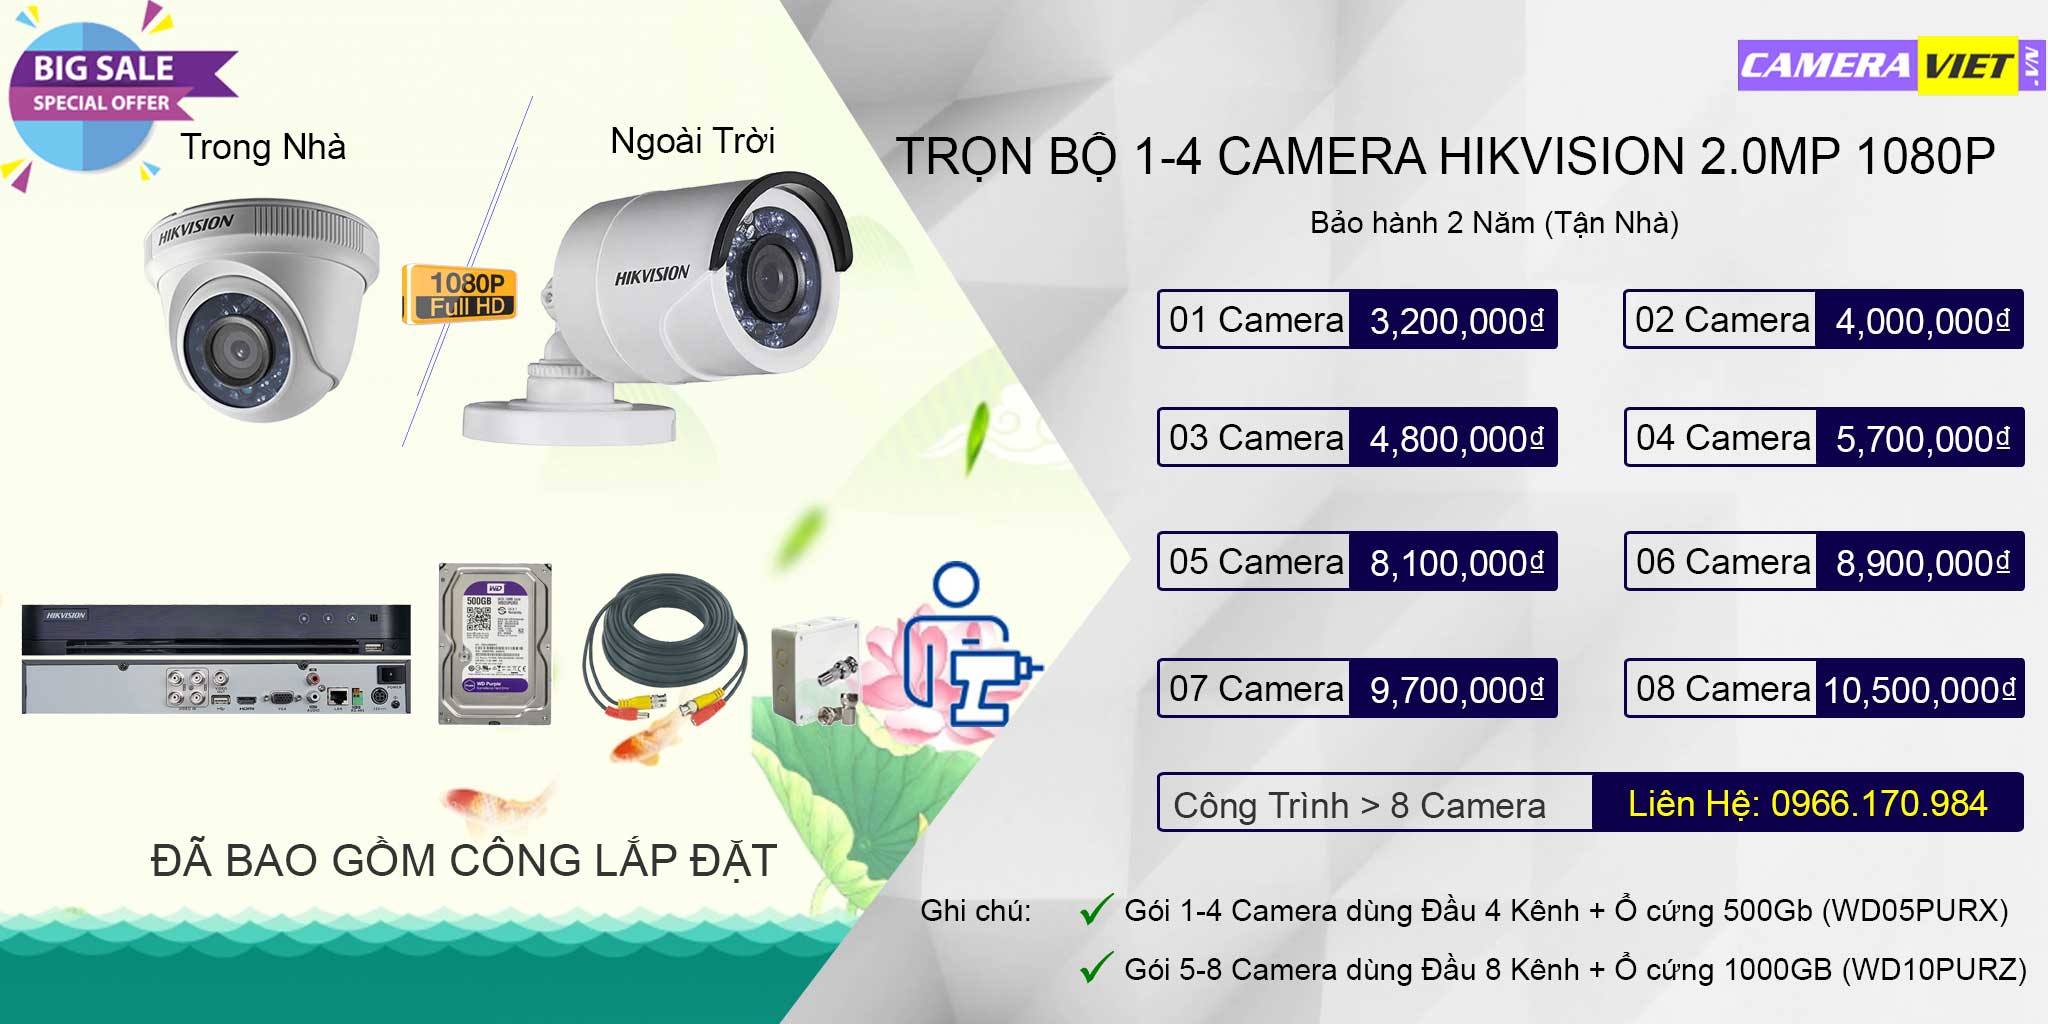 bảng giá lắp đặt trọn bộ camera hikvision tại tphcm